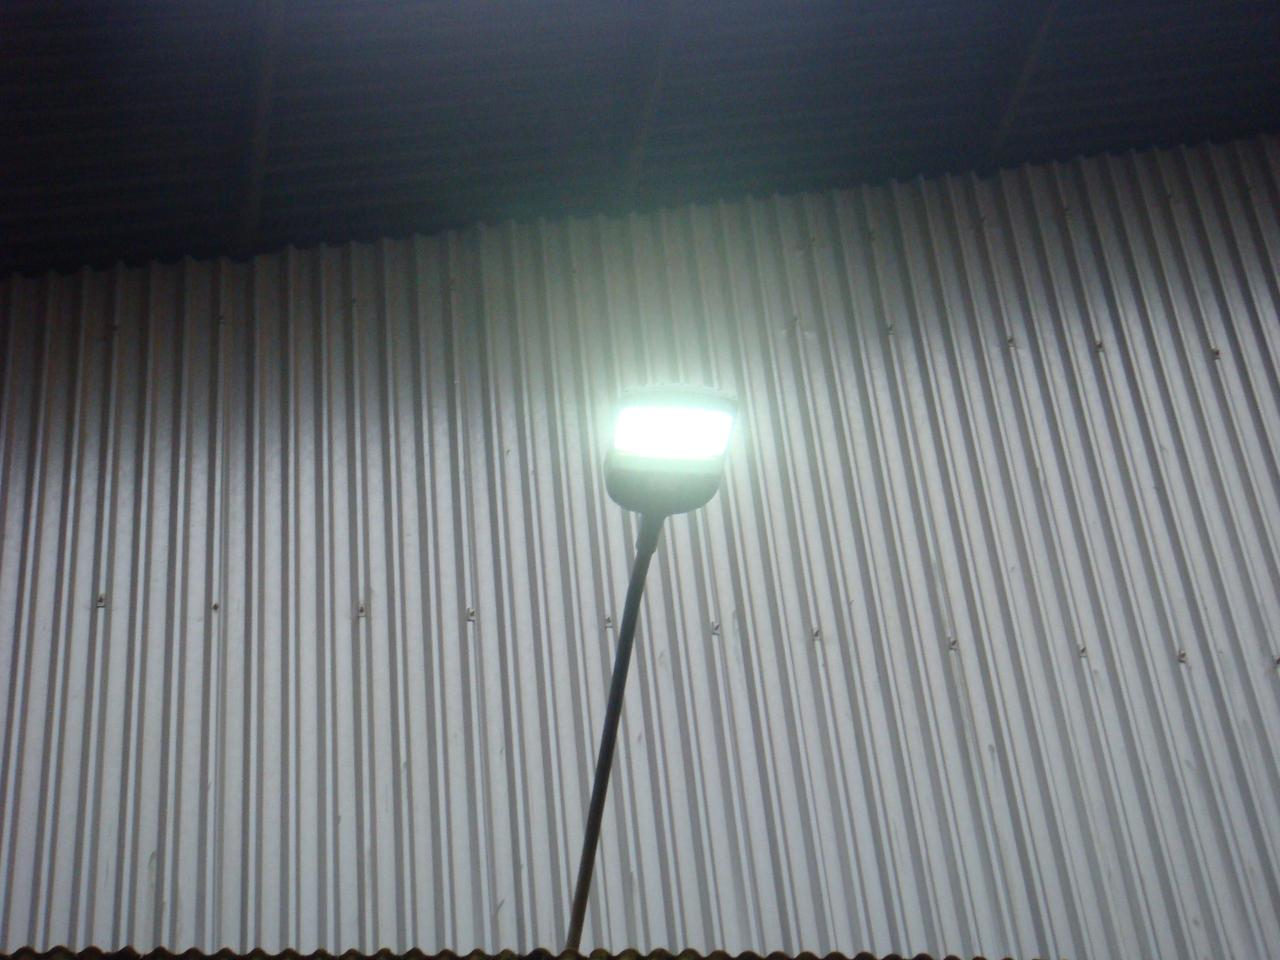 ผลงานการติดตั้งโคมไฟถนน LED (LED STREET LIGHT)